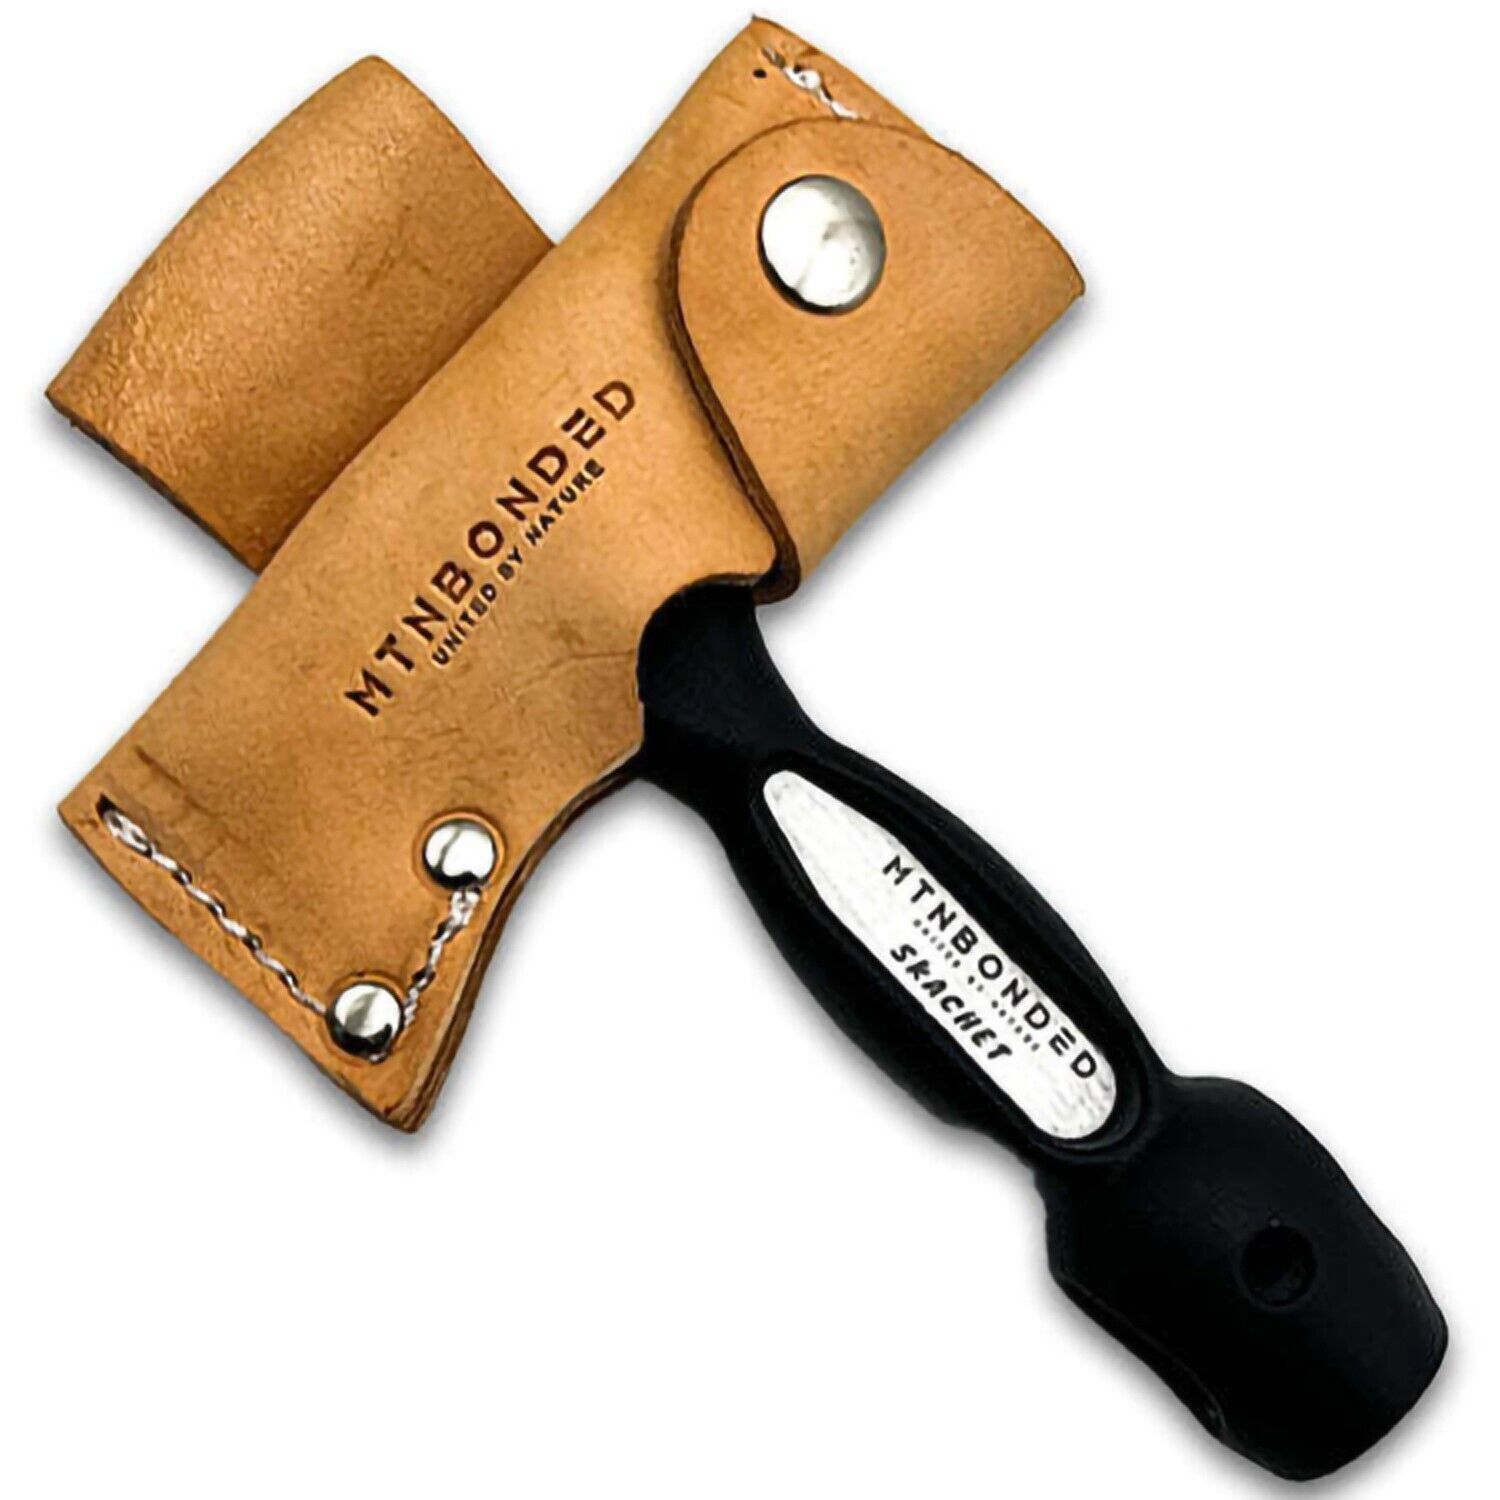 Vintage Skachet Survival Tool w/ Leather Sheath MTN Bonded Axe Head Multi-tool